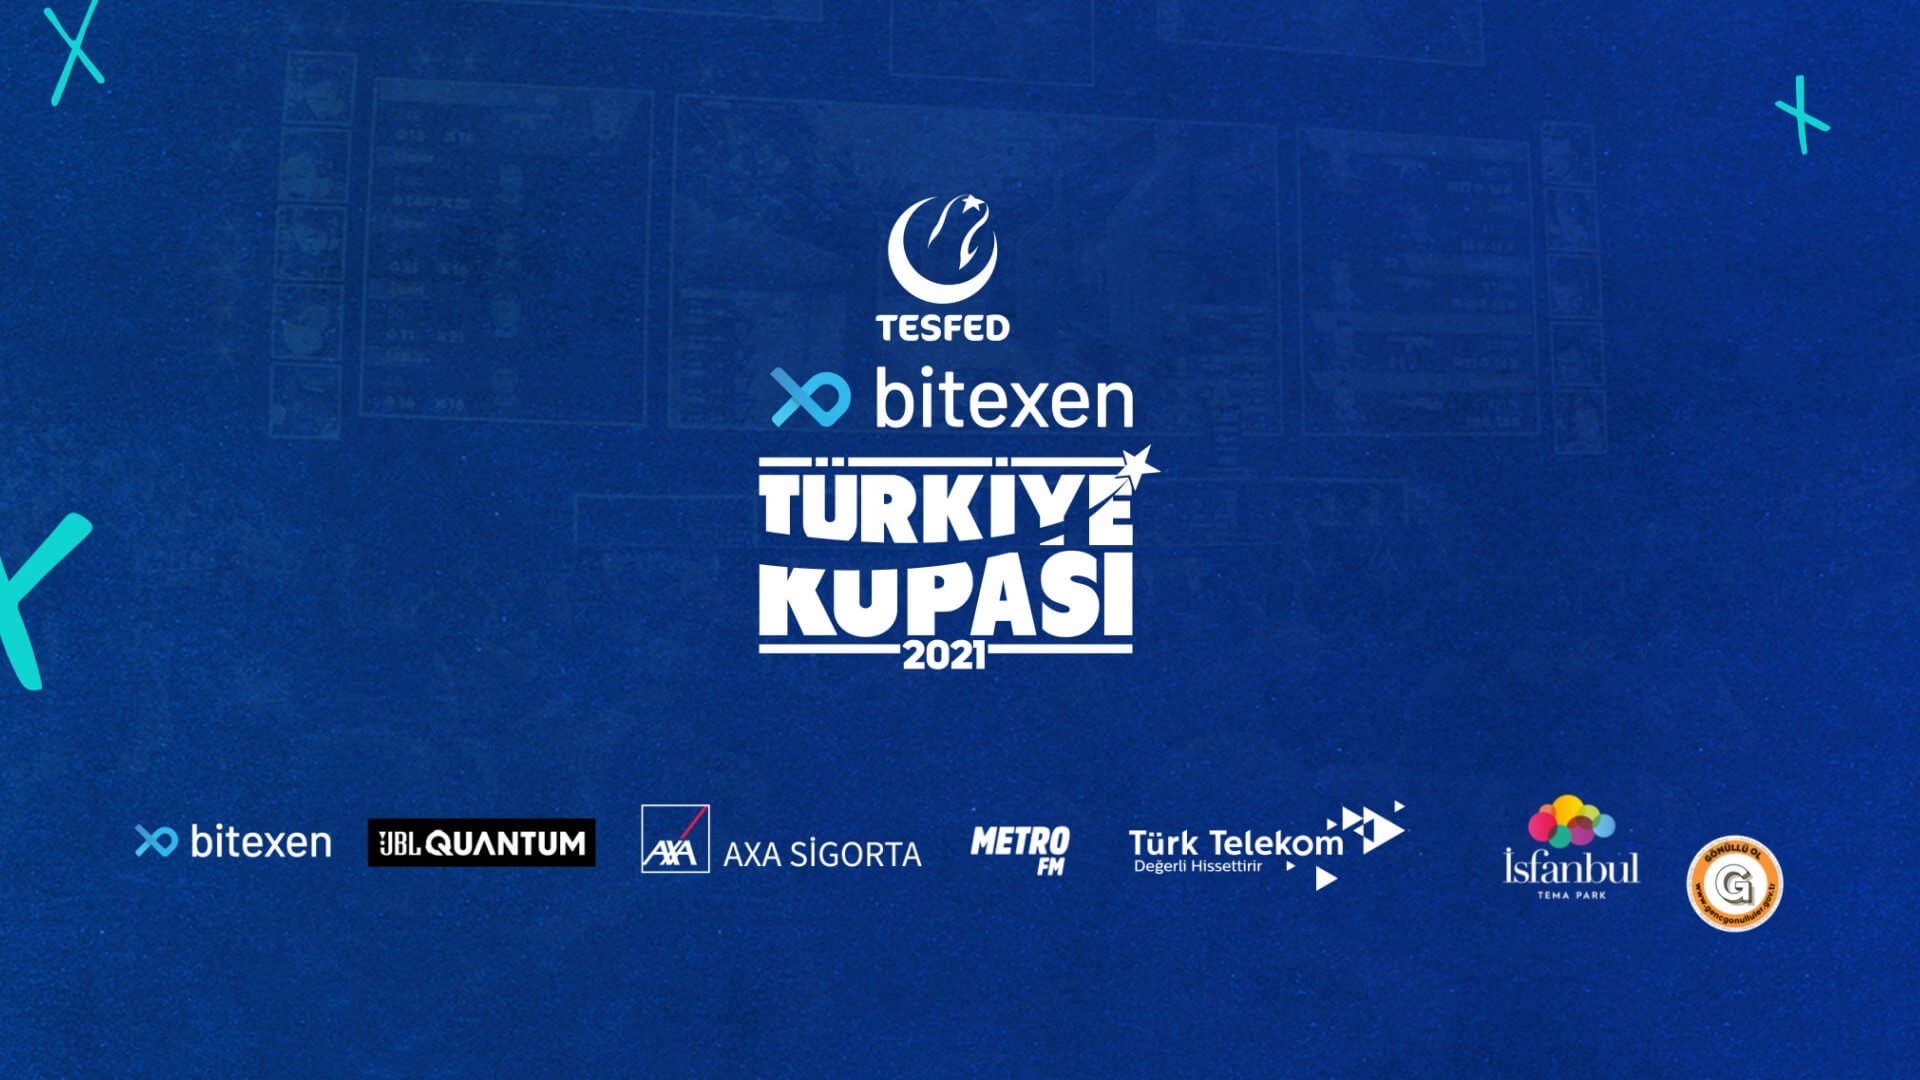 Bitexen TESFED Türkiye Kupası bu yıl üçüncü kez 11 farklı oyunda düzenlenecek